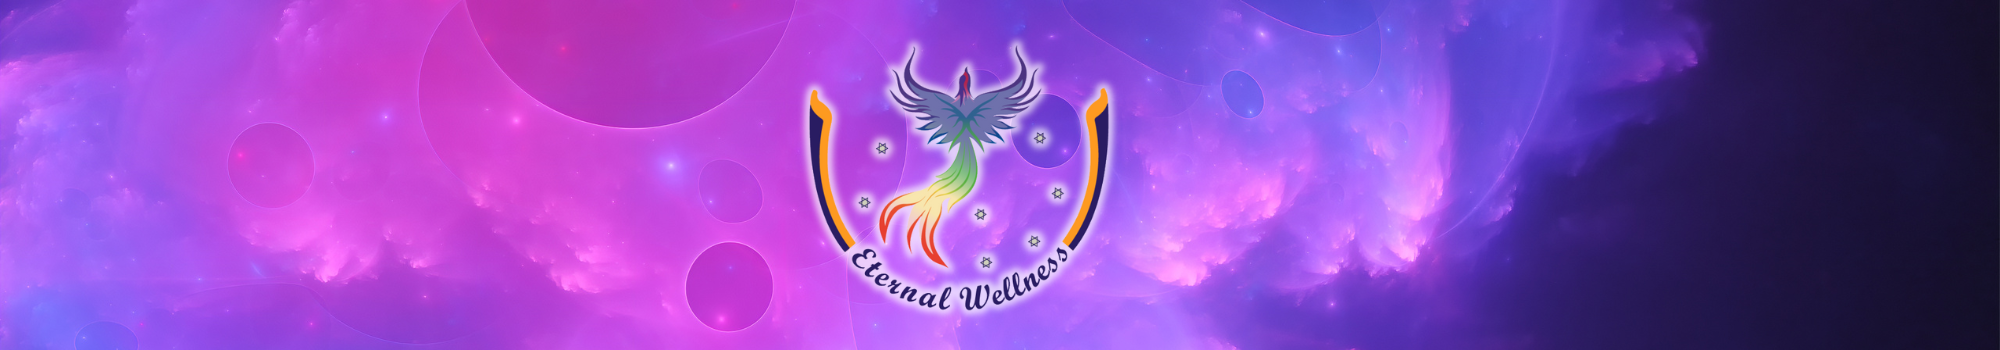 Eternal Wellness